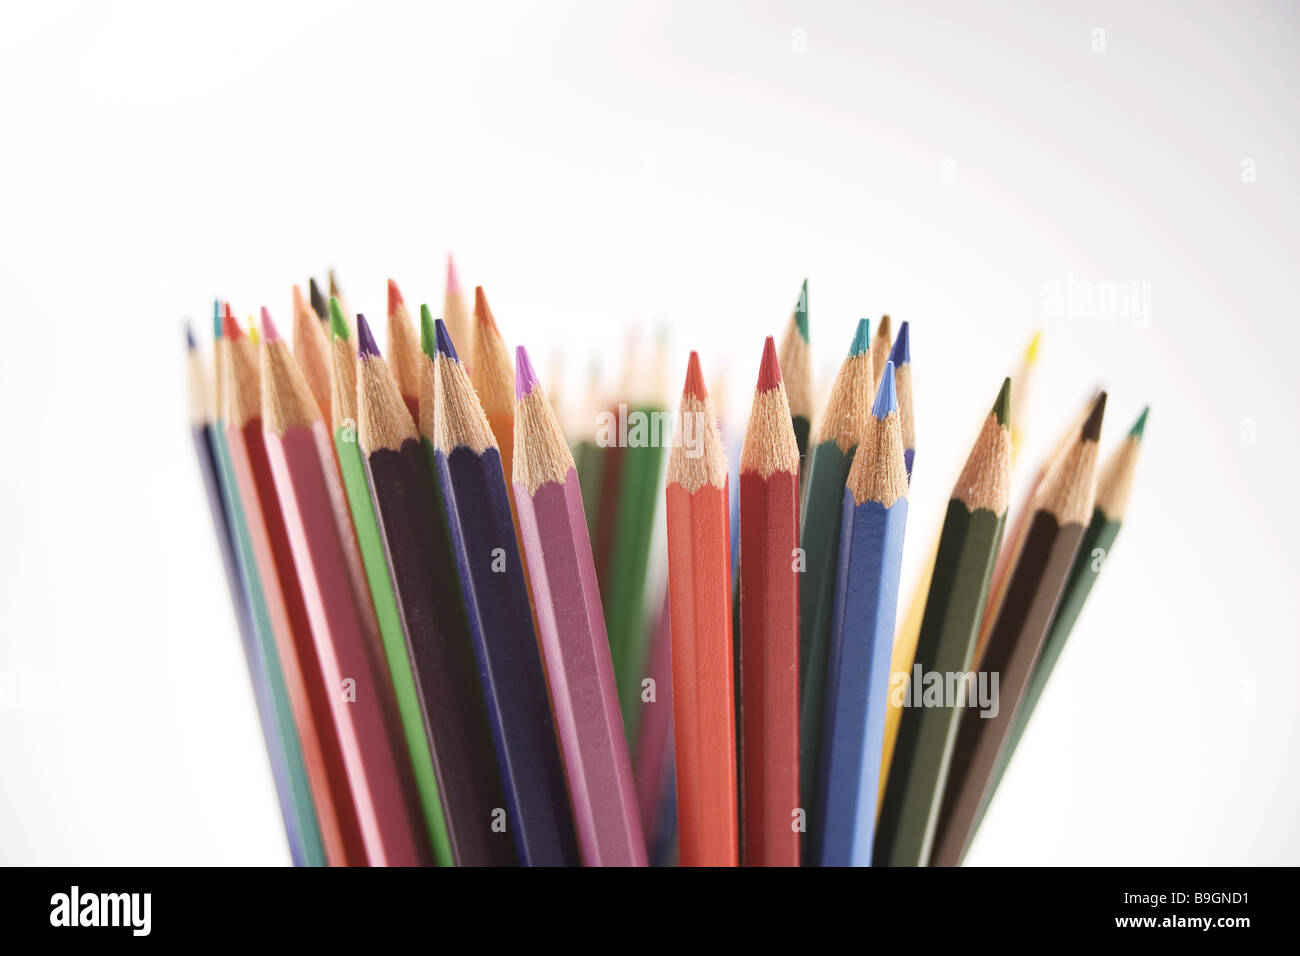 https://c8.alamy.com/comp/B9GND1/crayons-detail-blur-pens-crayons-mines-color-mines-colors-colorfully-B9GND1.jpg